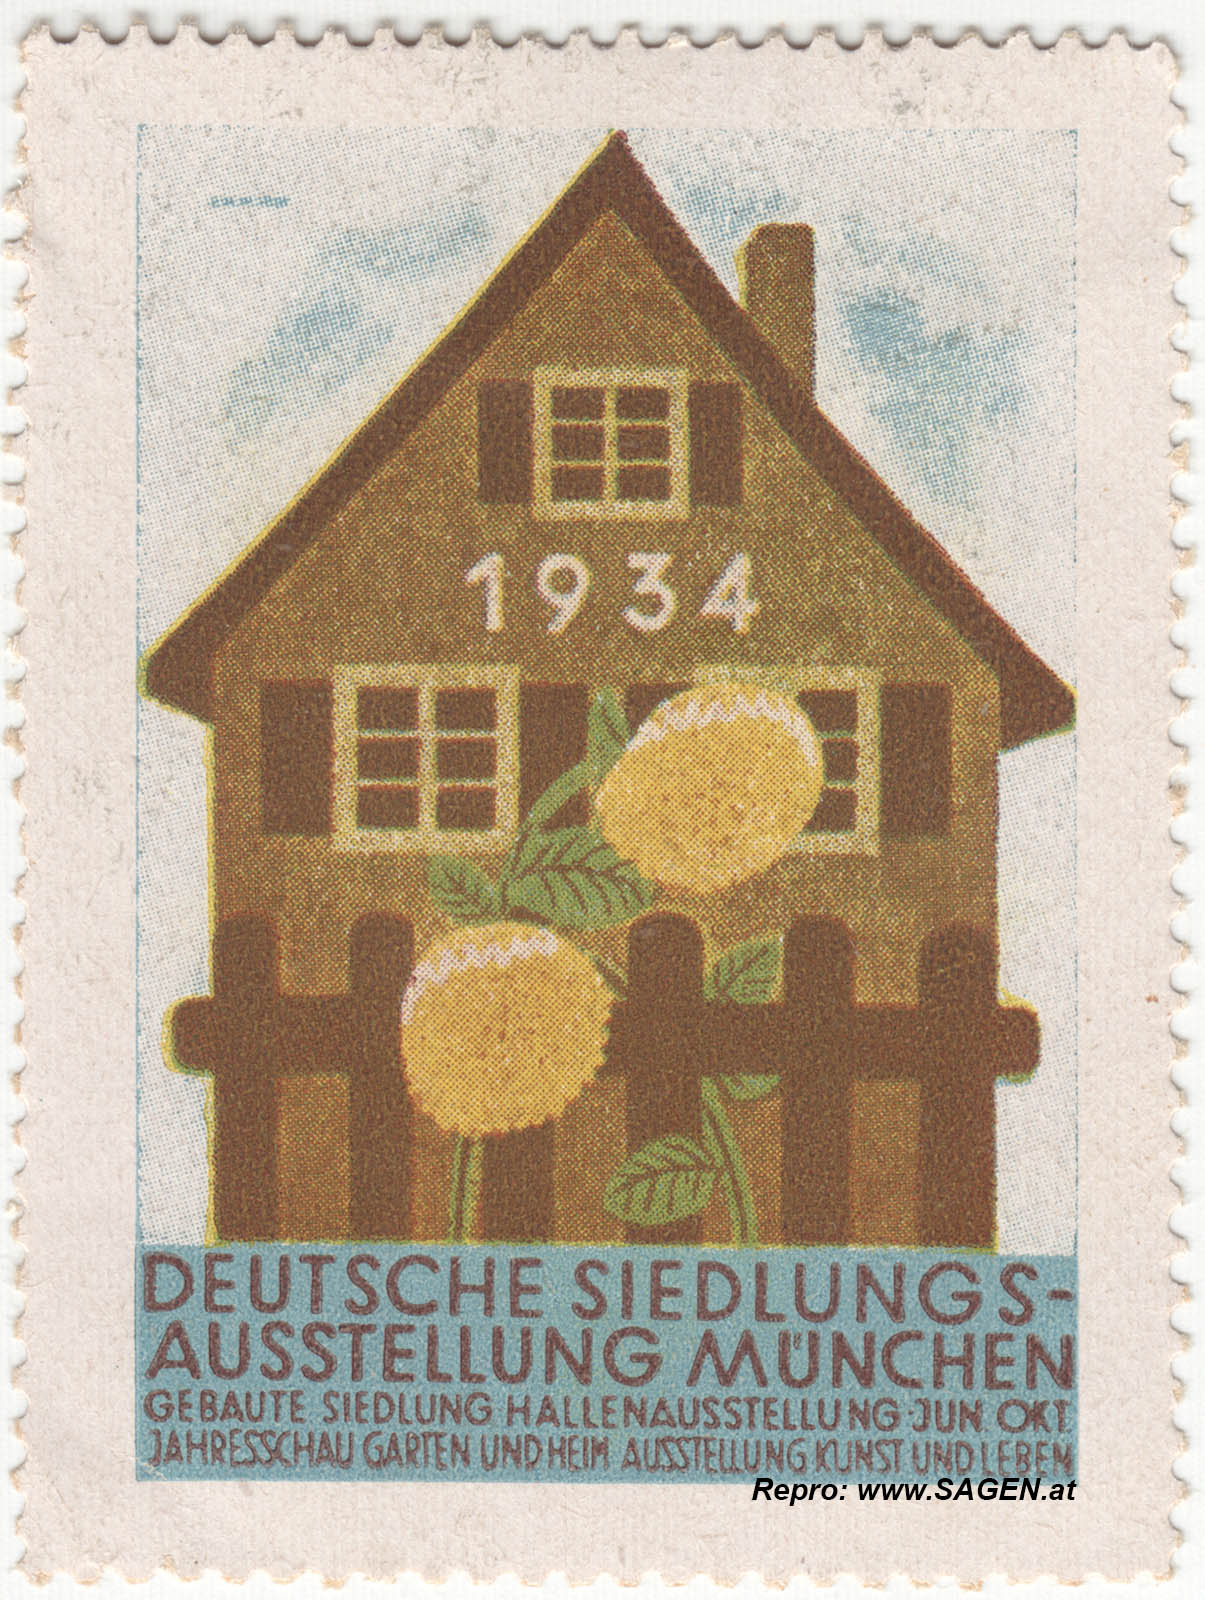 Siedlungs-Ausstellung München 1934